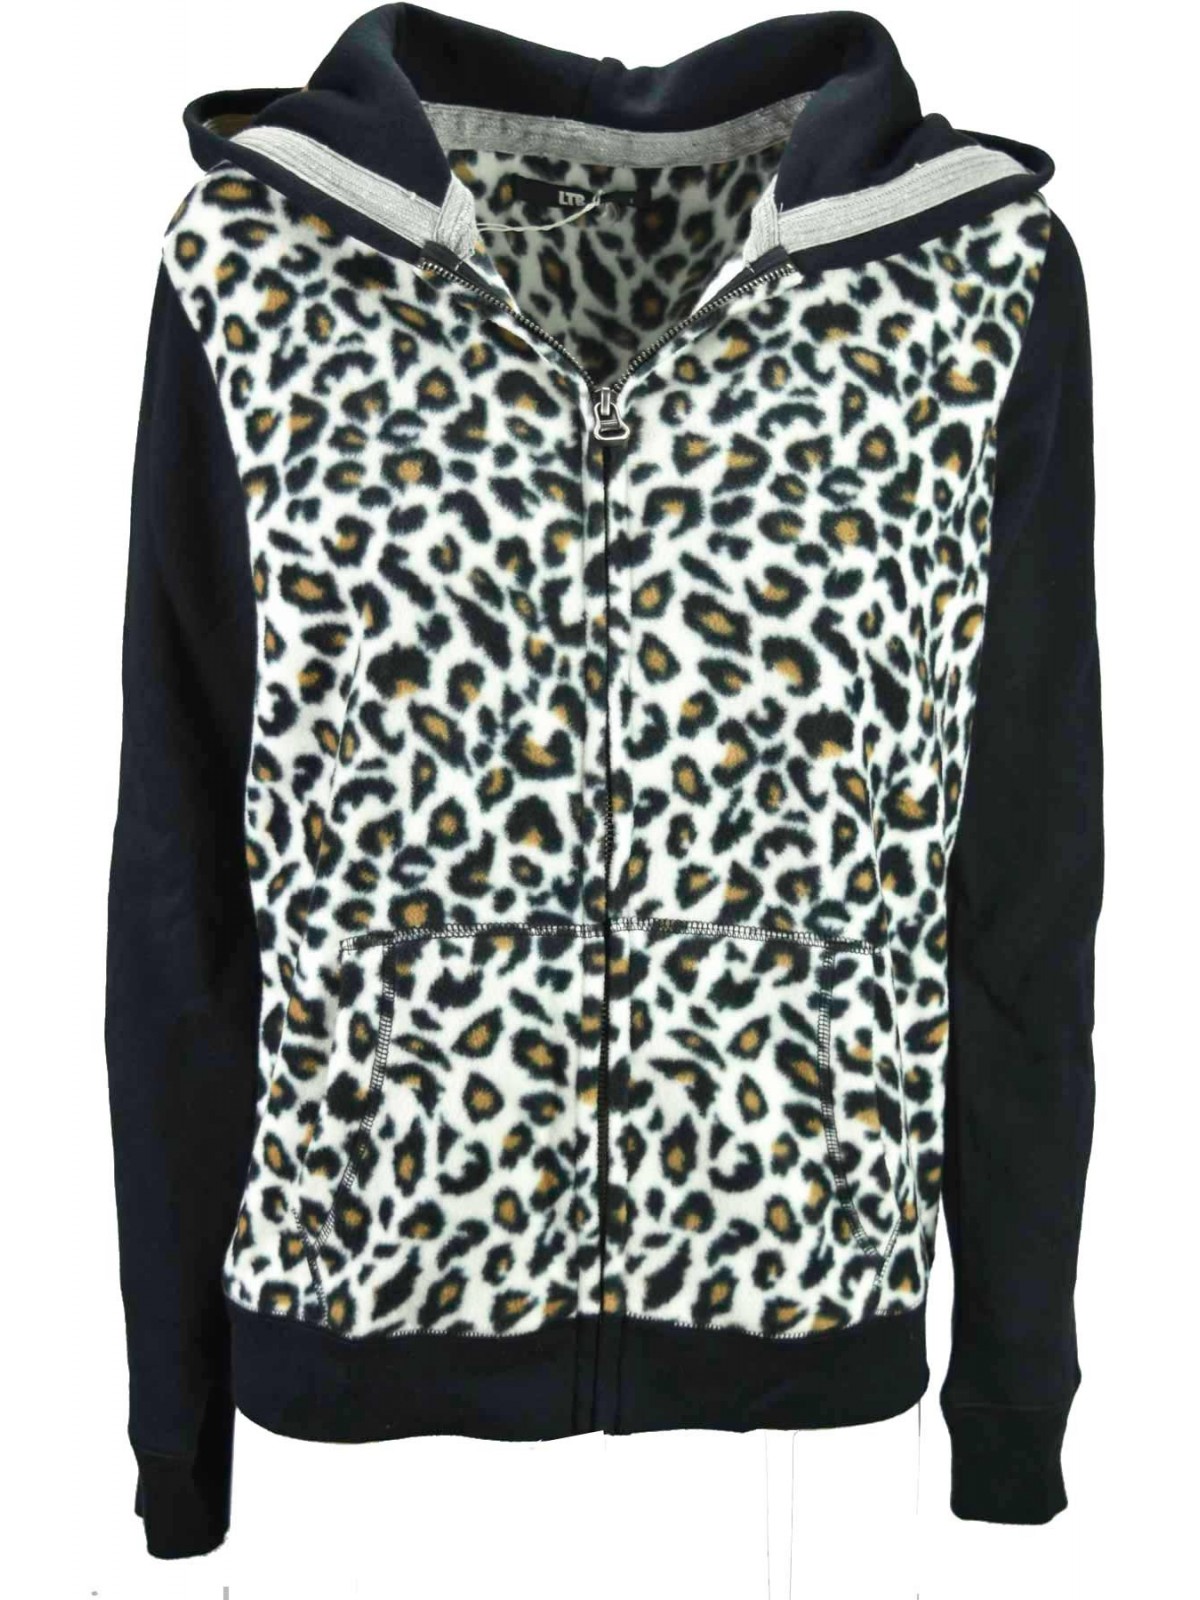 Sweatshirt Fleece Leopard hoodies Juventus